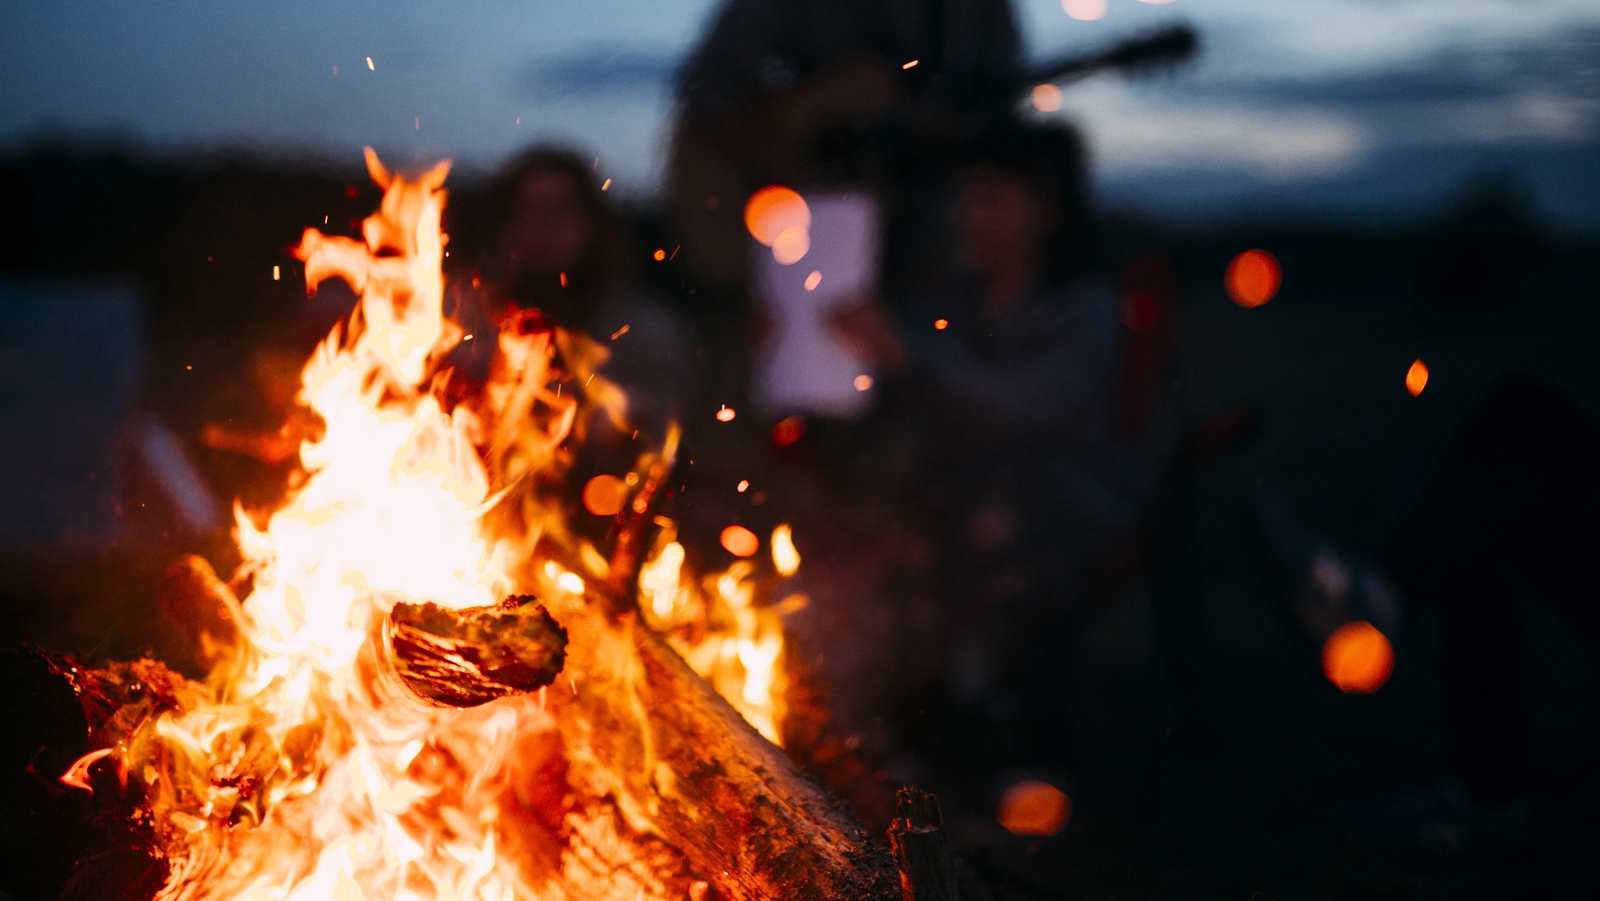 Irish May Day traditions - bonfires 